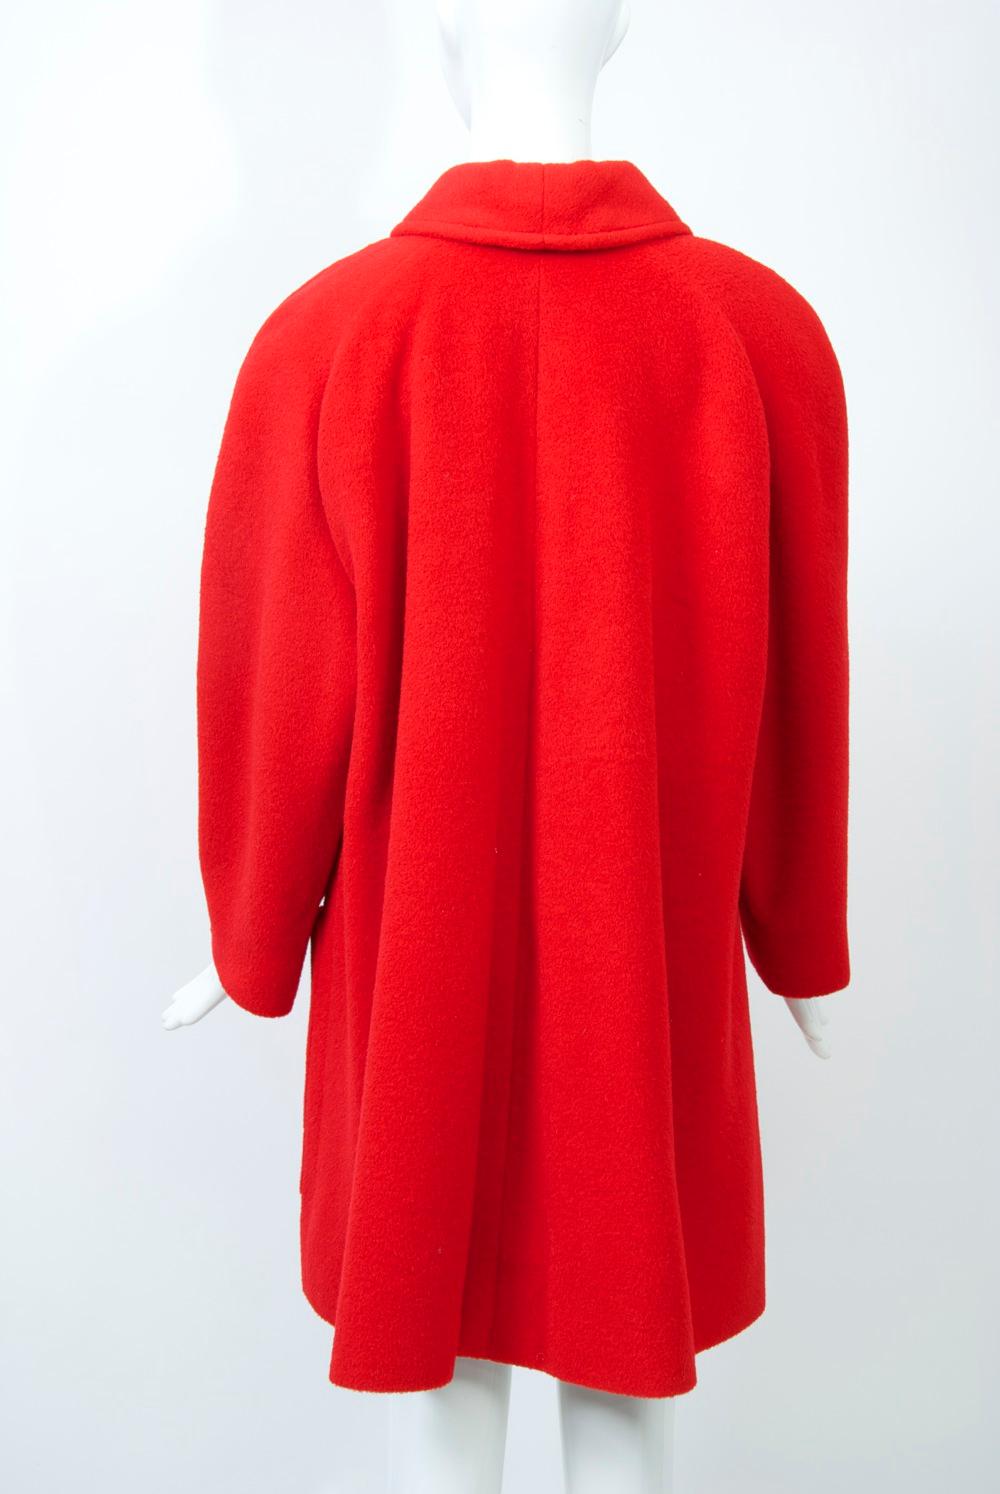 Tiktiner Short Red Coat 1